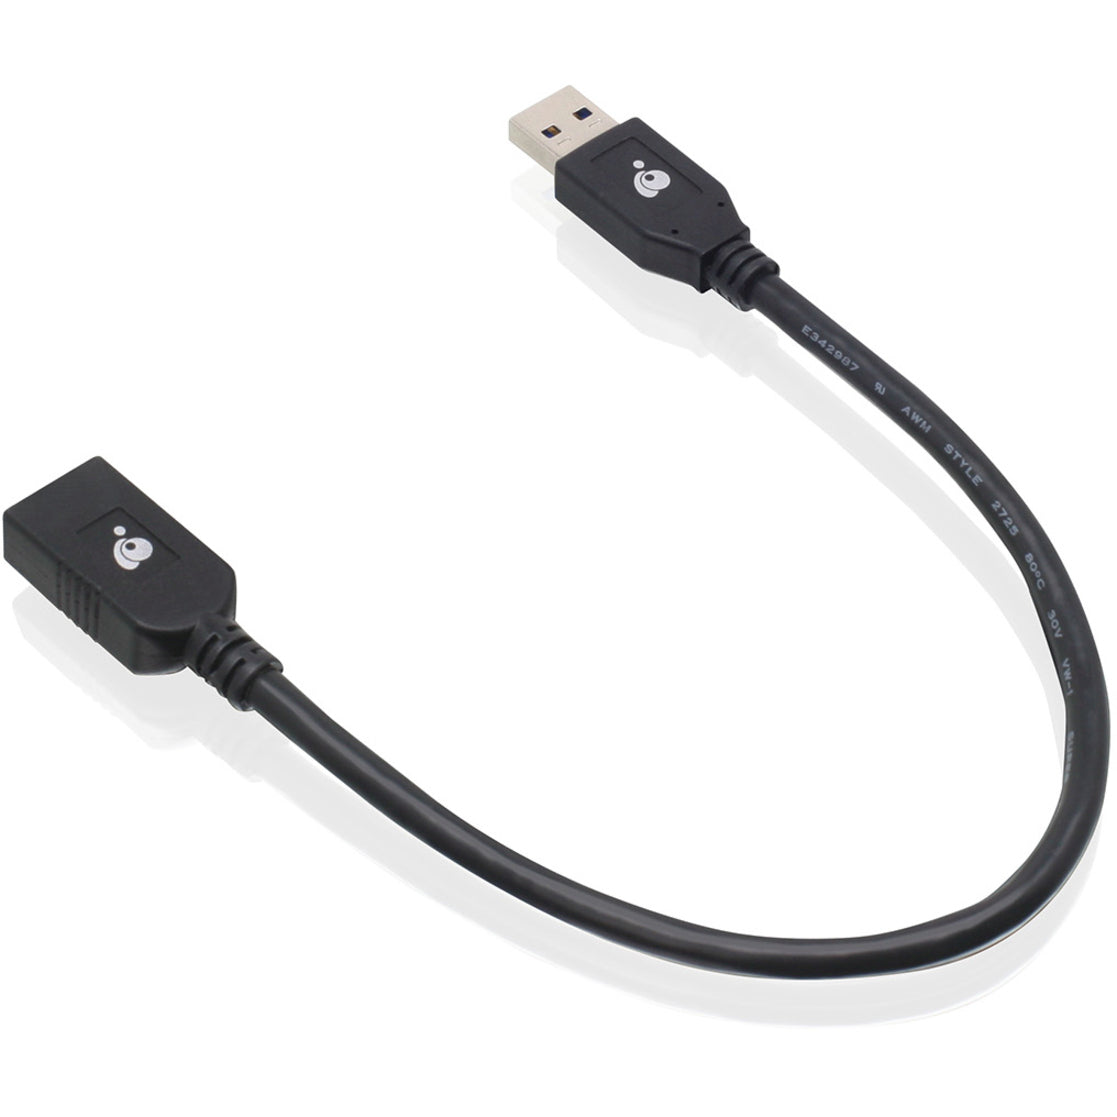 IOGEAR G2LU3AMF USB 3.0 Prolunga del cavo Maschio a Femmina 12 pollici Velocità di trasferimento dati di 5 Gbit/s